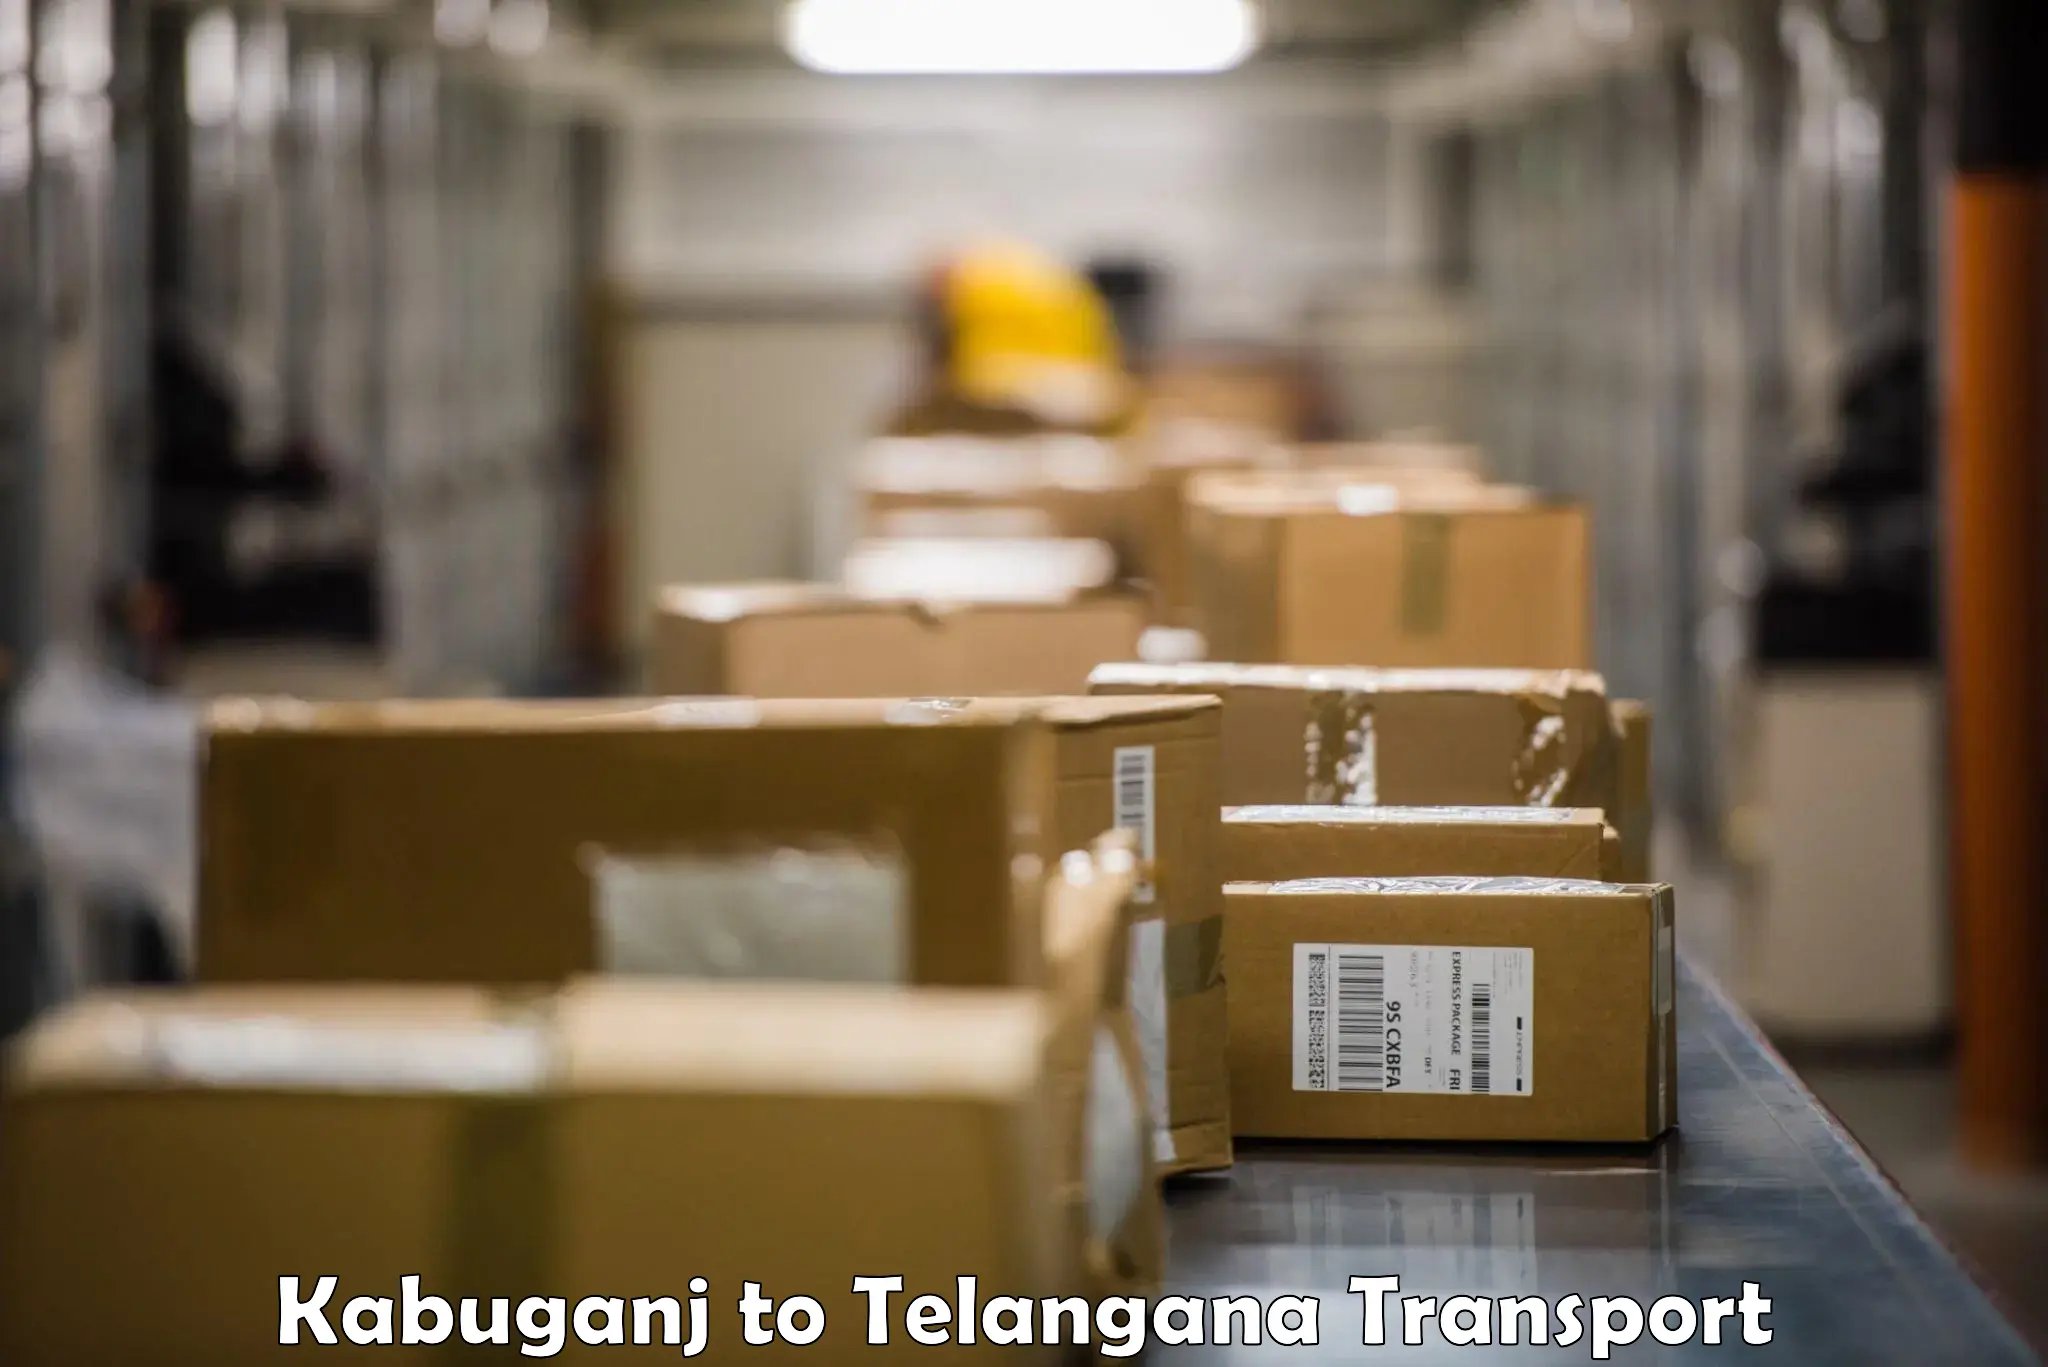 Nearest transport service Kabuganj to Telangana